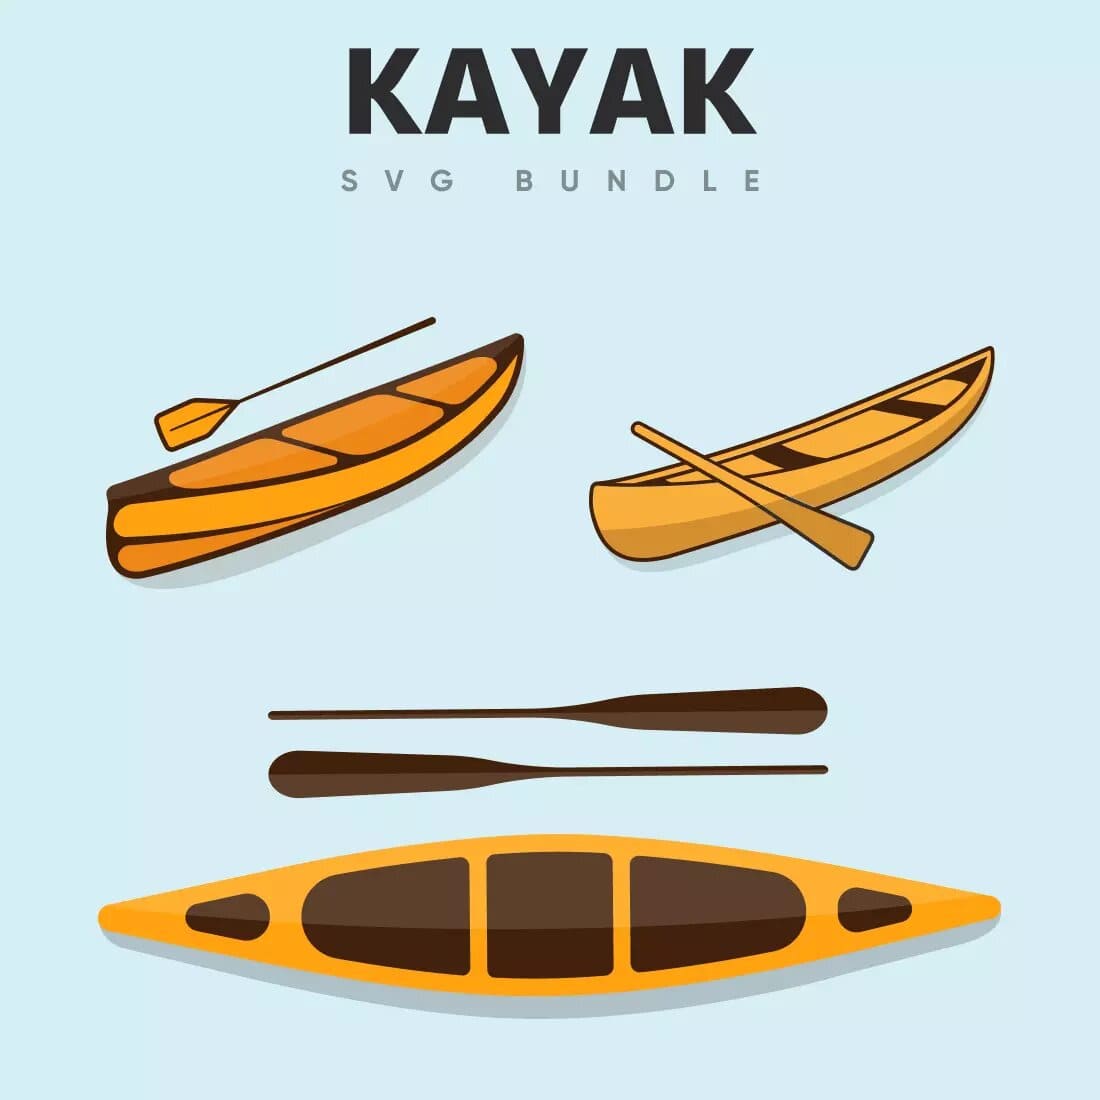 Kayak Life SVG Bundle Preview 6.